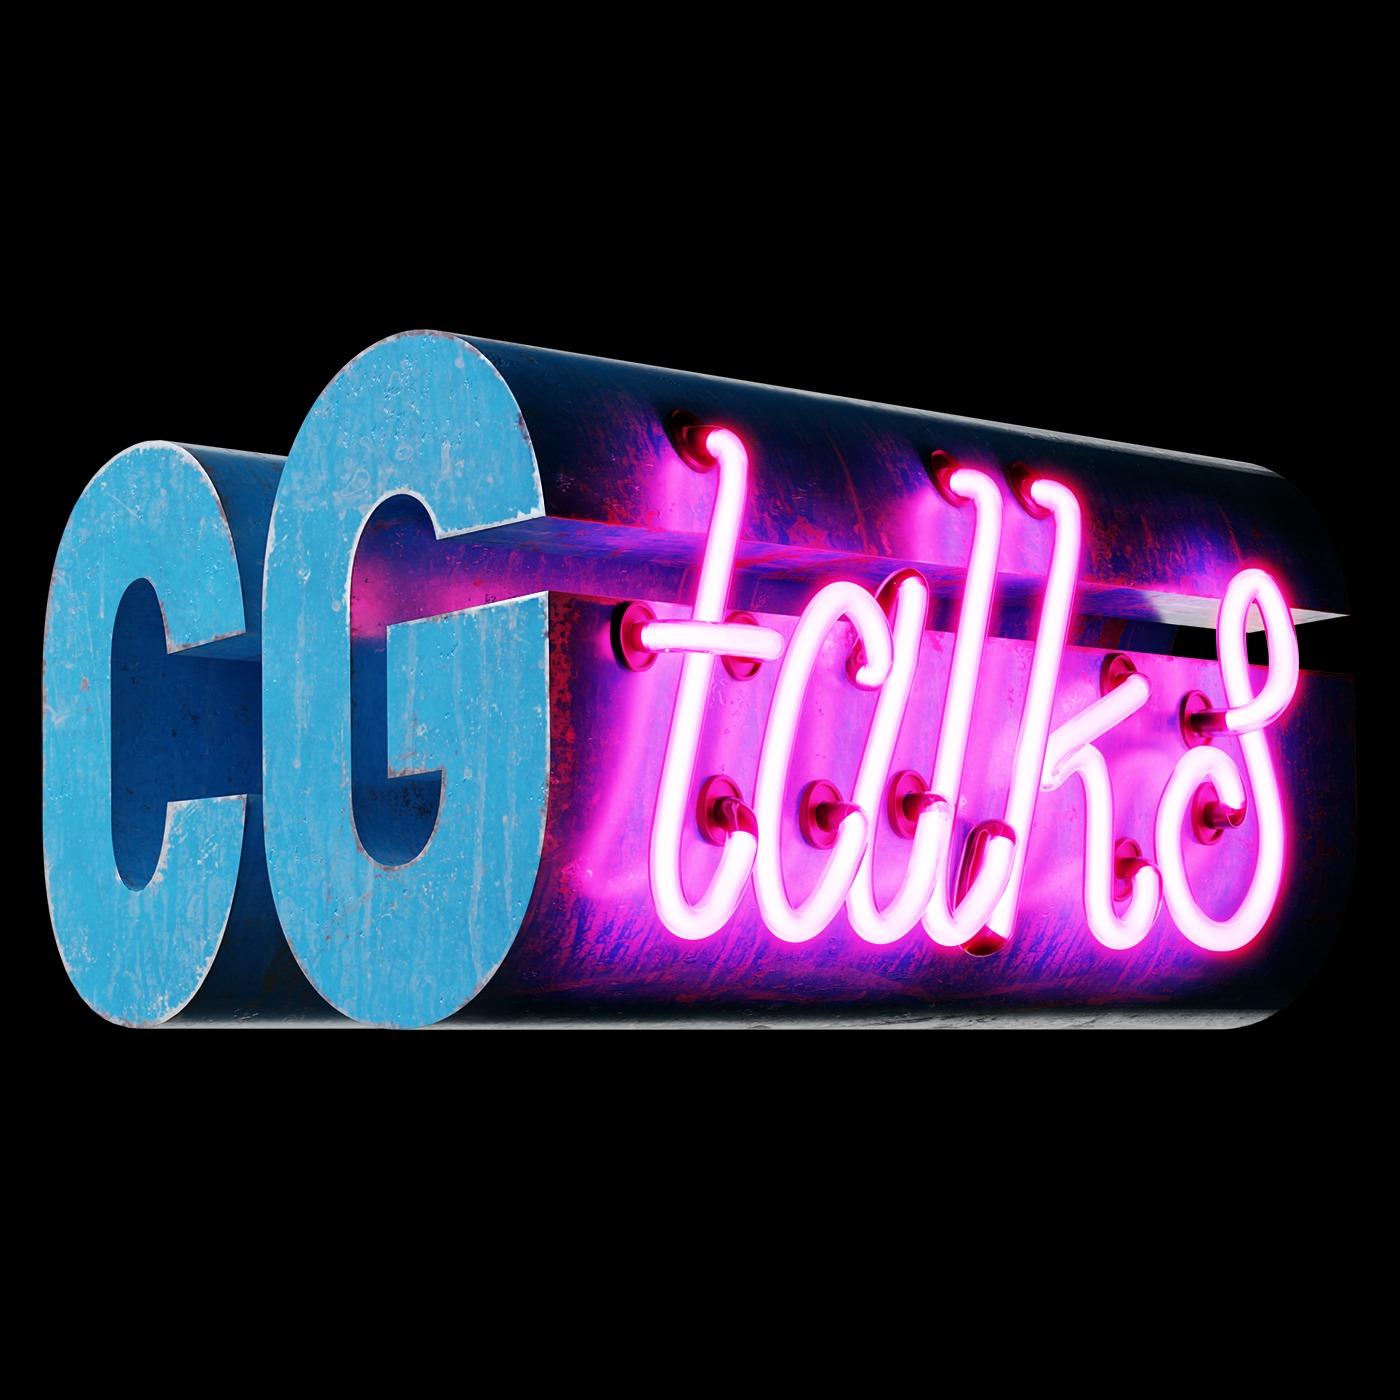 CG talks